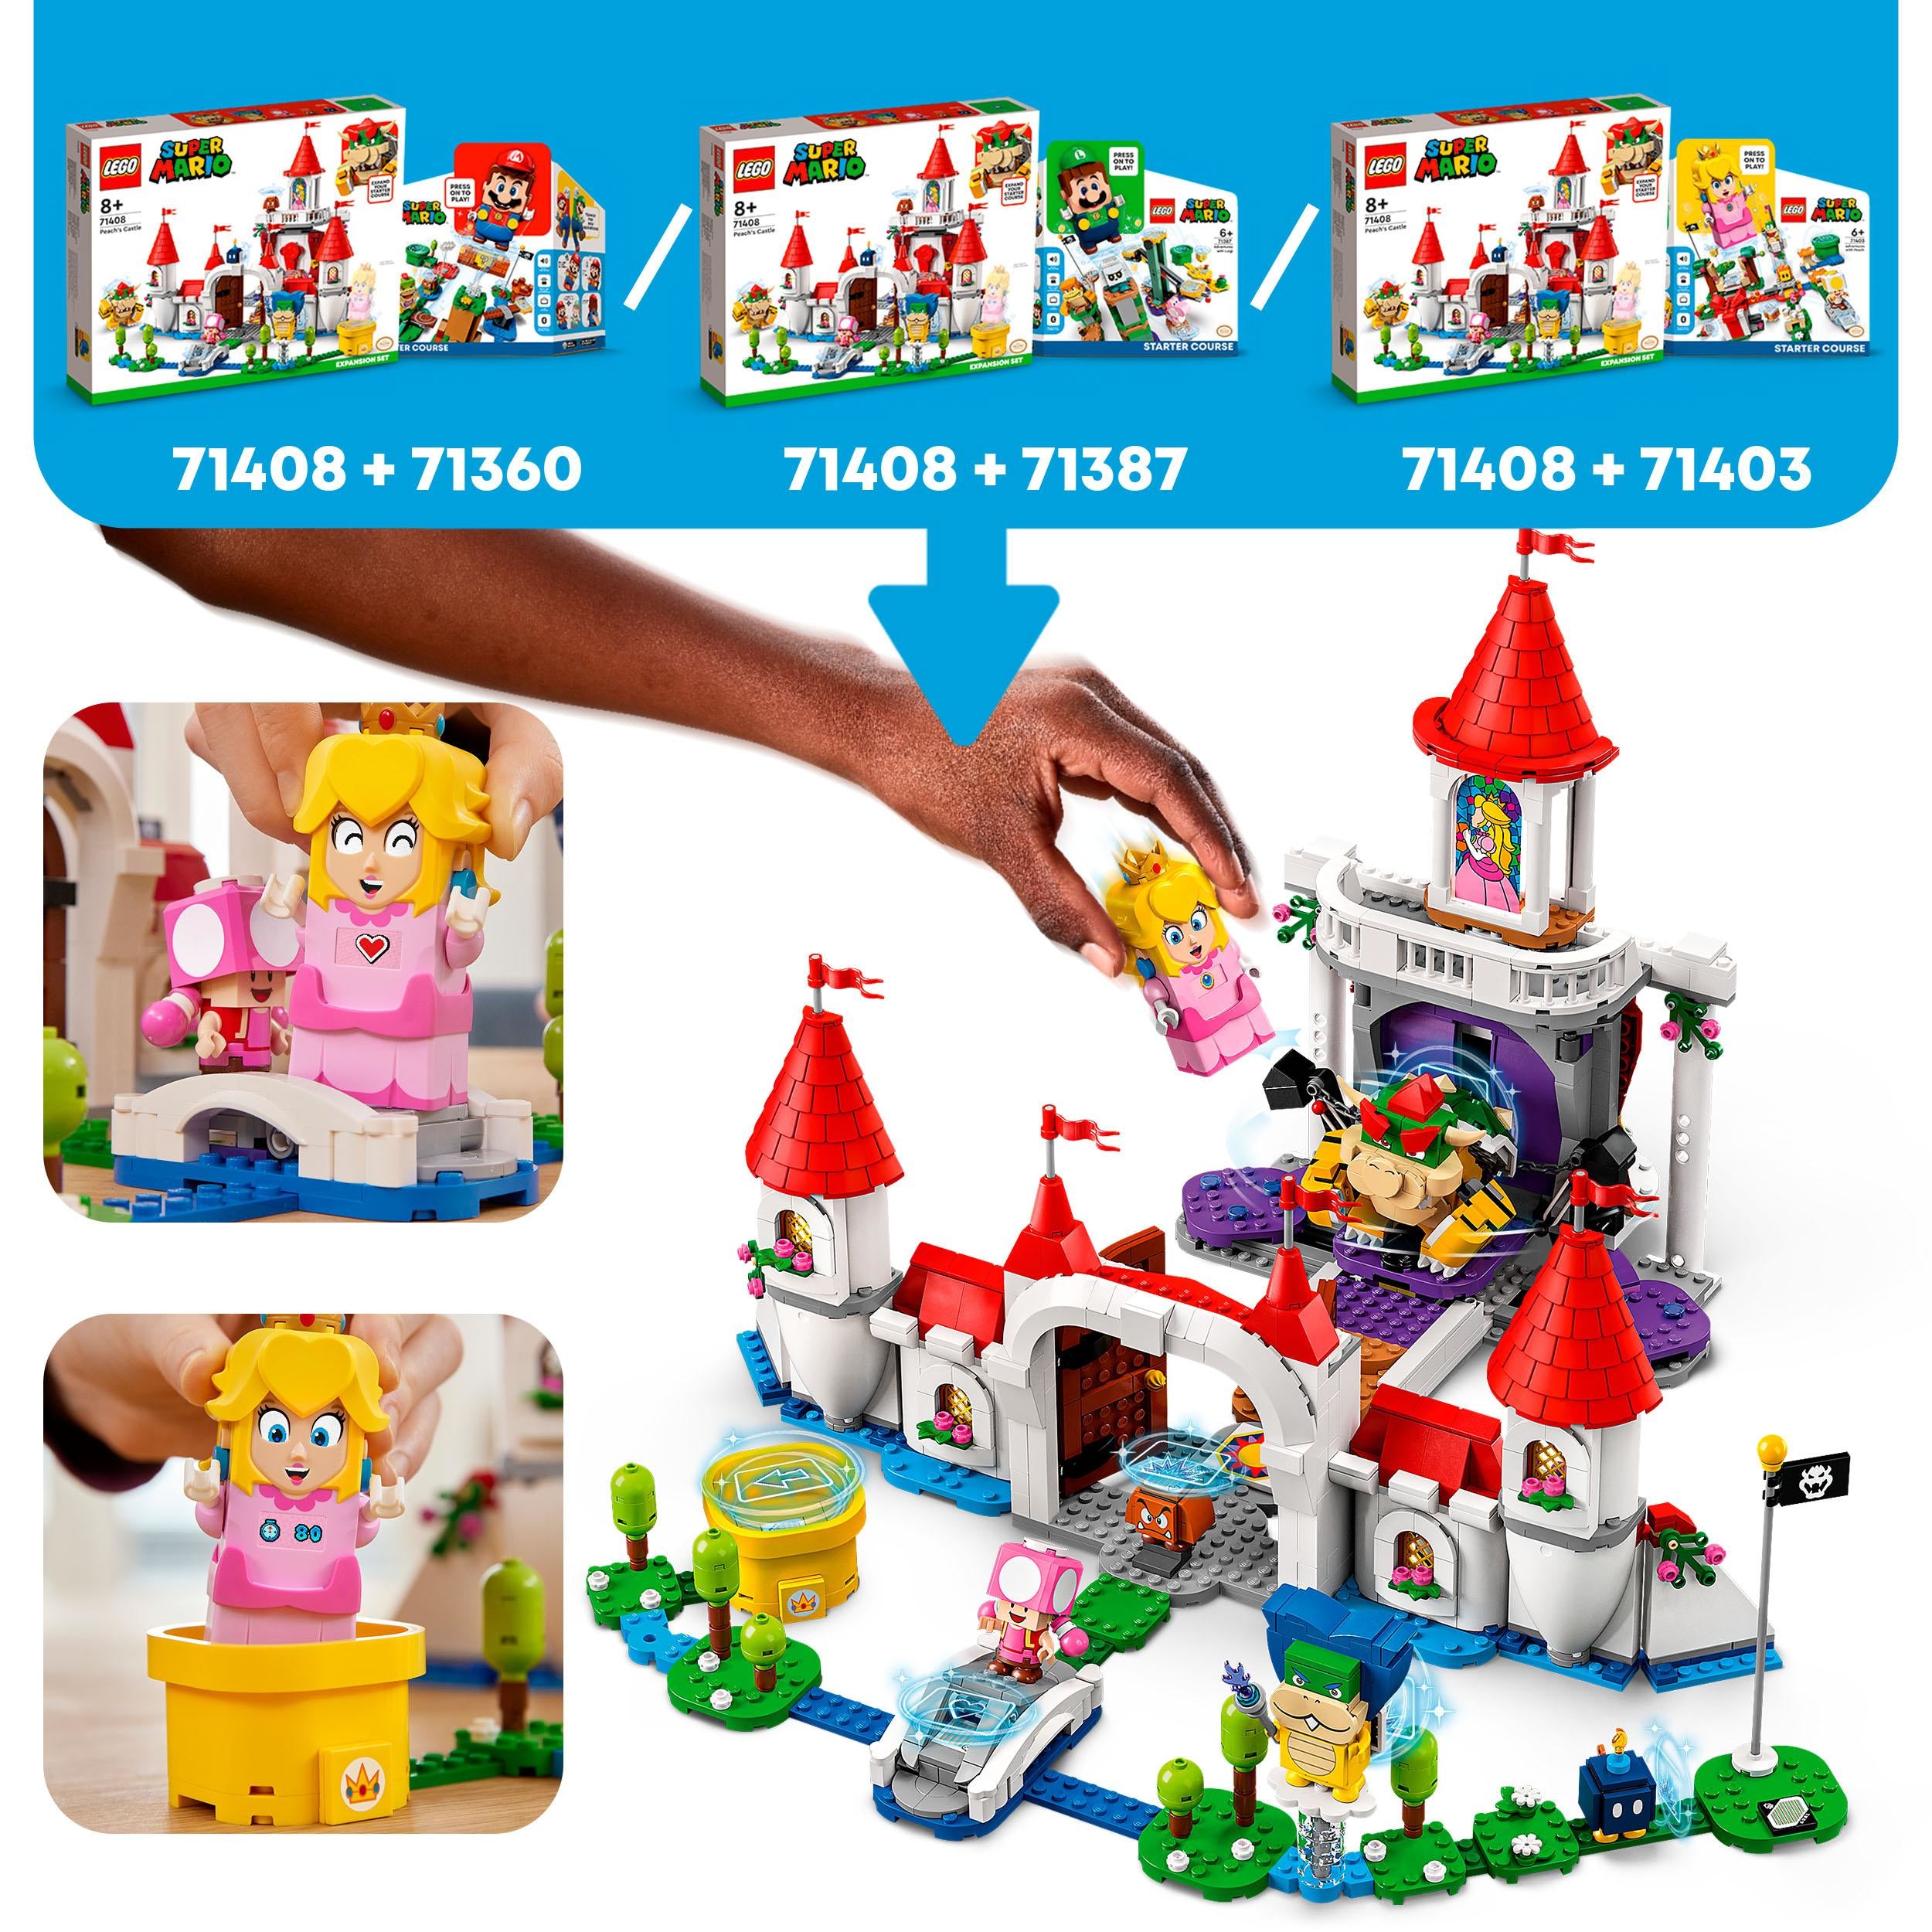 71408 LEGO® Super Mario - Pack espansione Castello di Peach